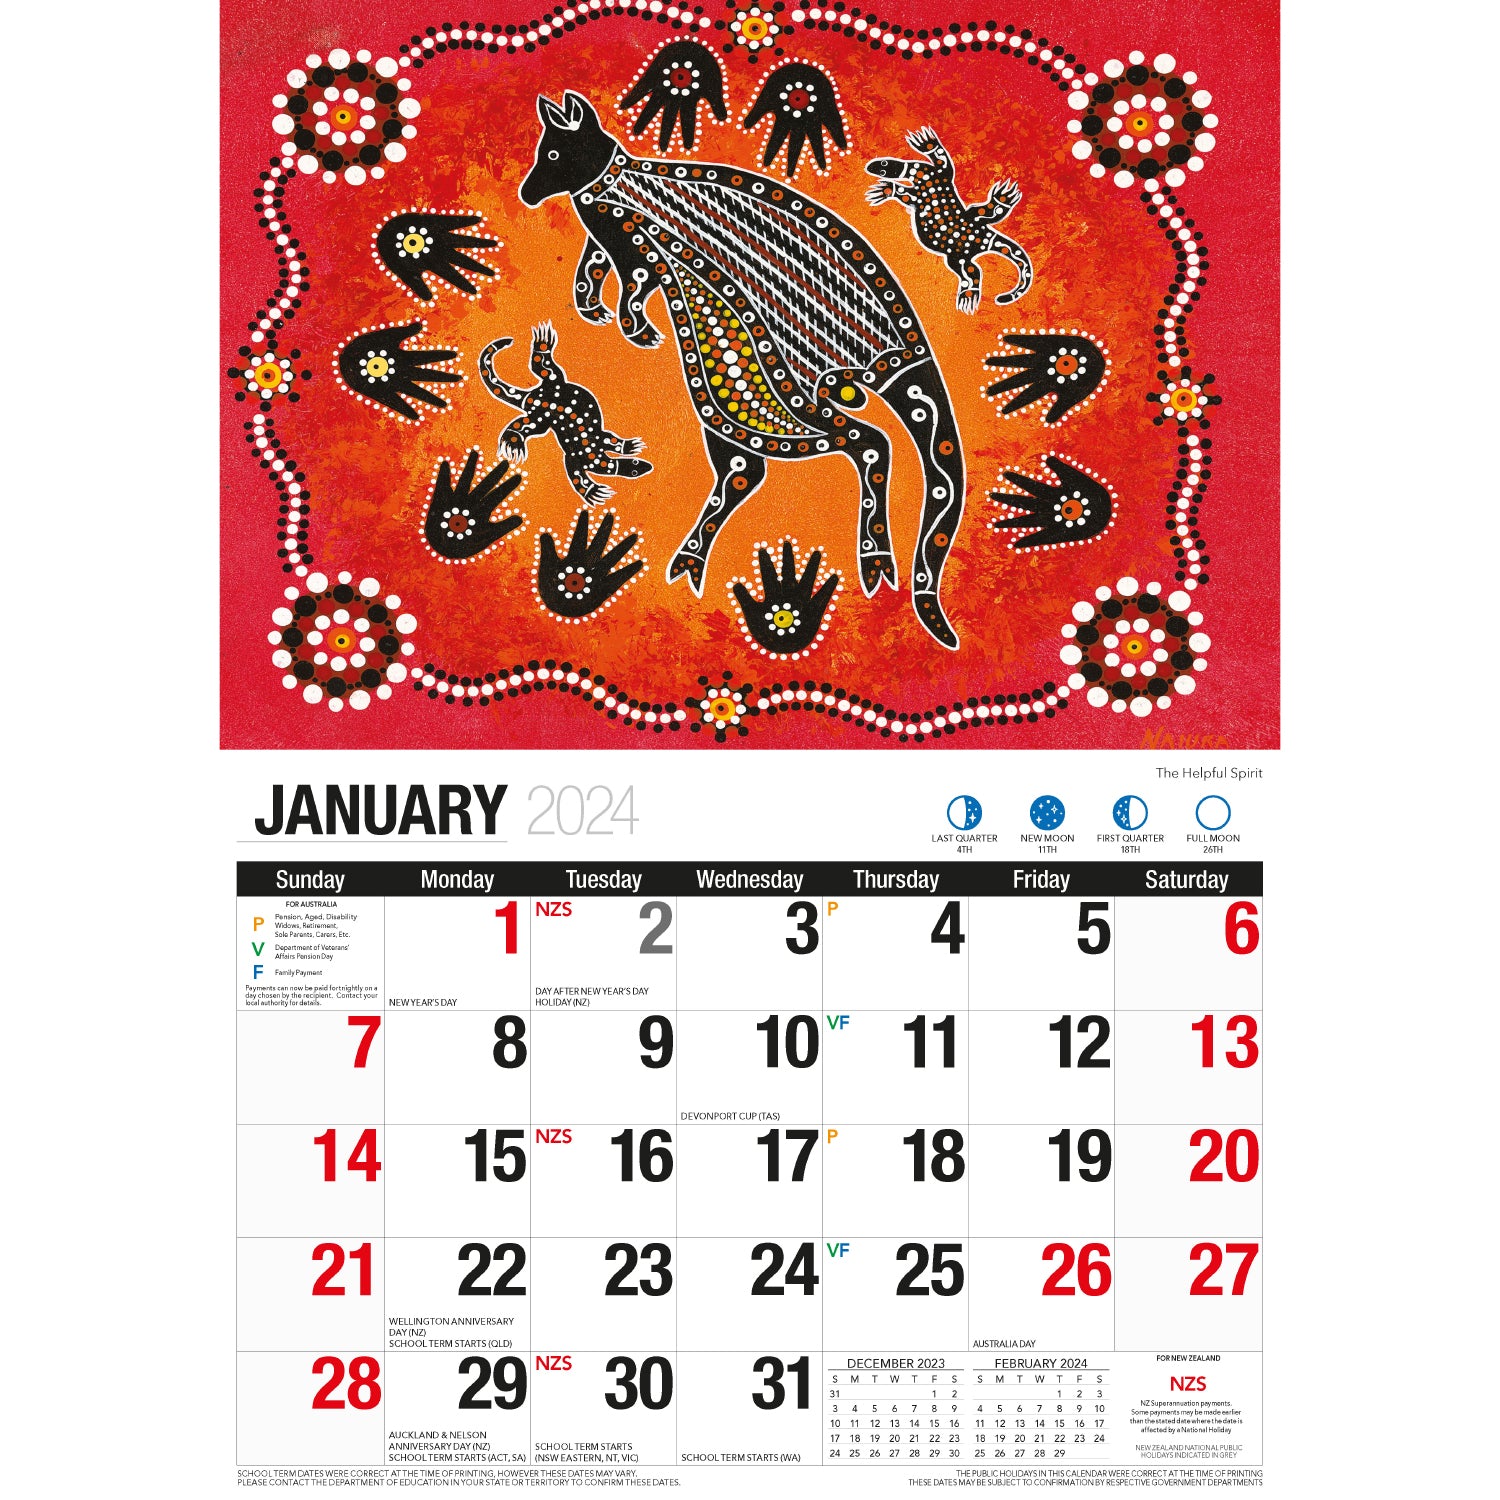 The Dreamtime - 2024 Rectangle Wall Calendar 16 Months Aboriginal Art New Year